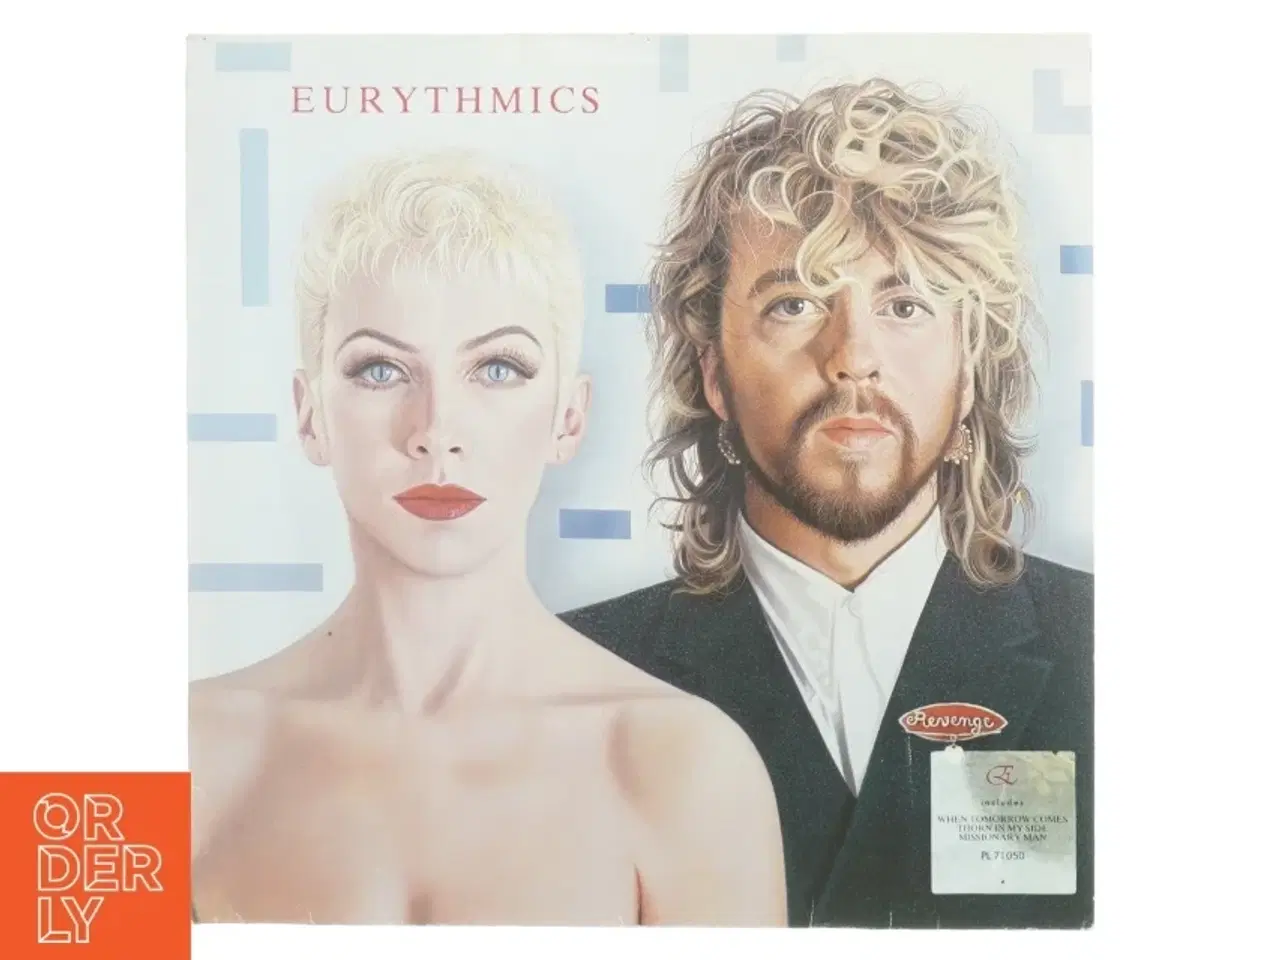 Billede 1 - Eurythmics - Revenge LP  fra RCA (str. 31 x 31 cm)